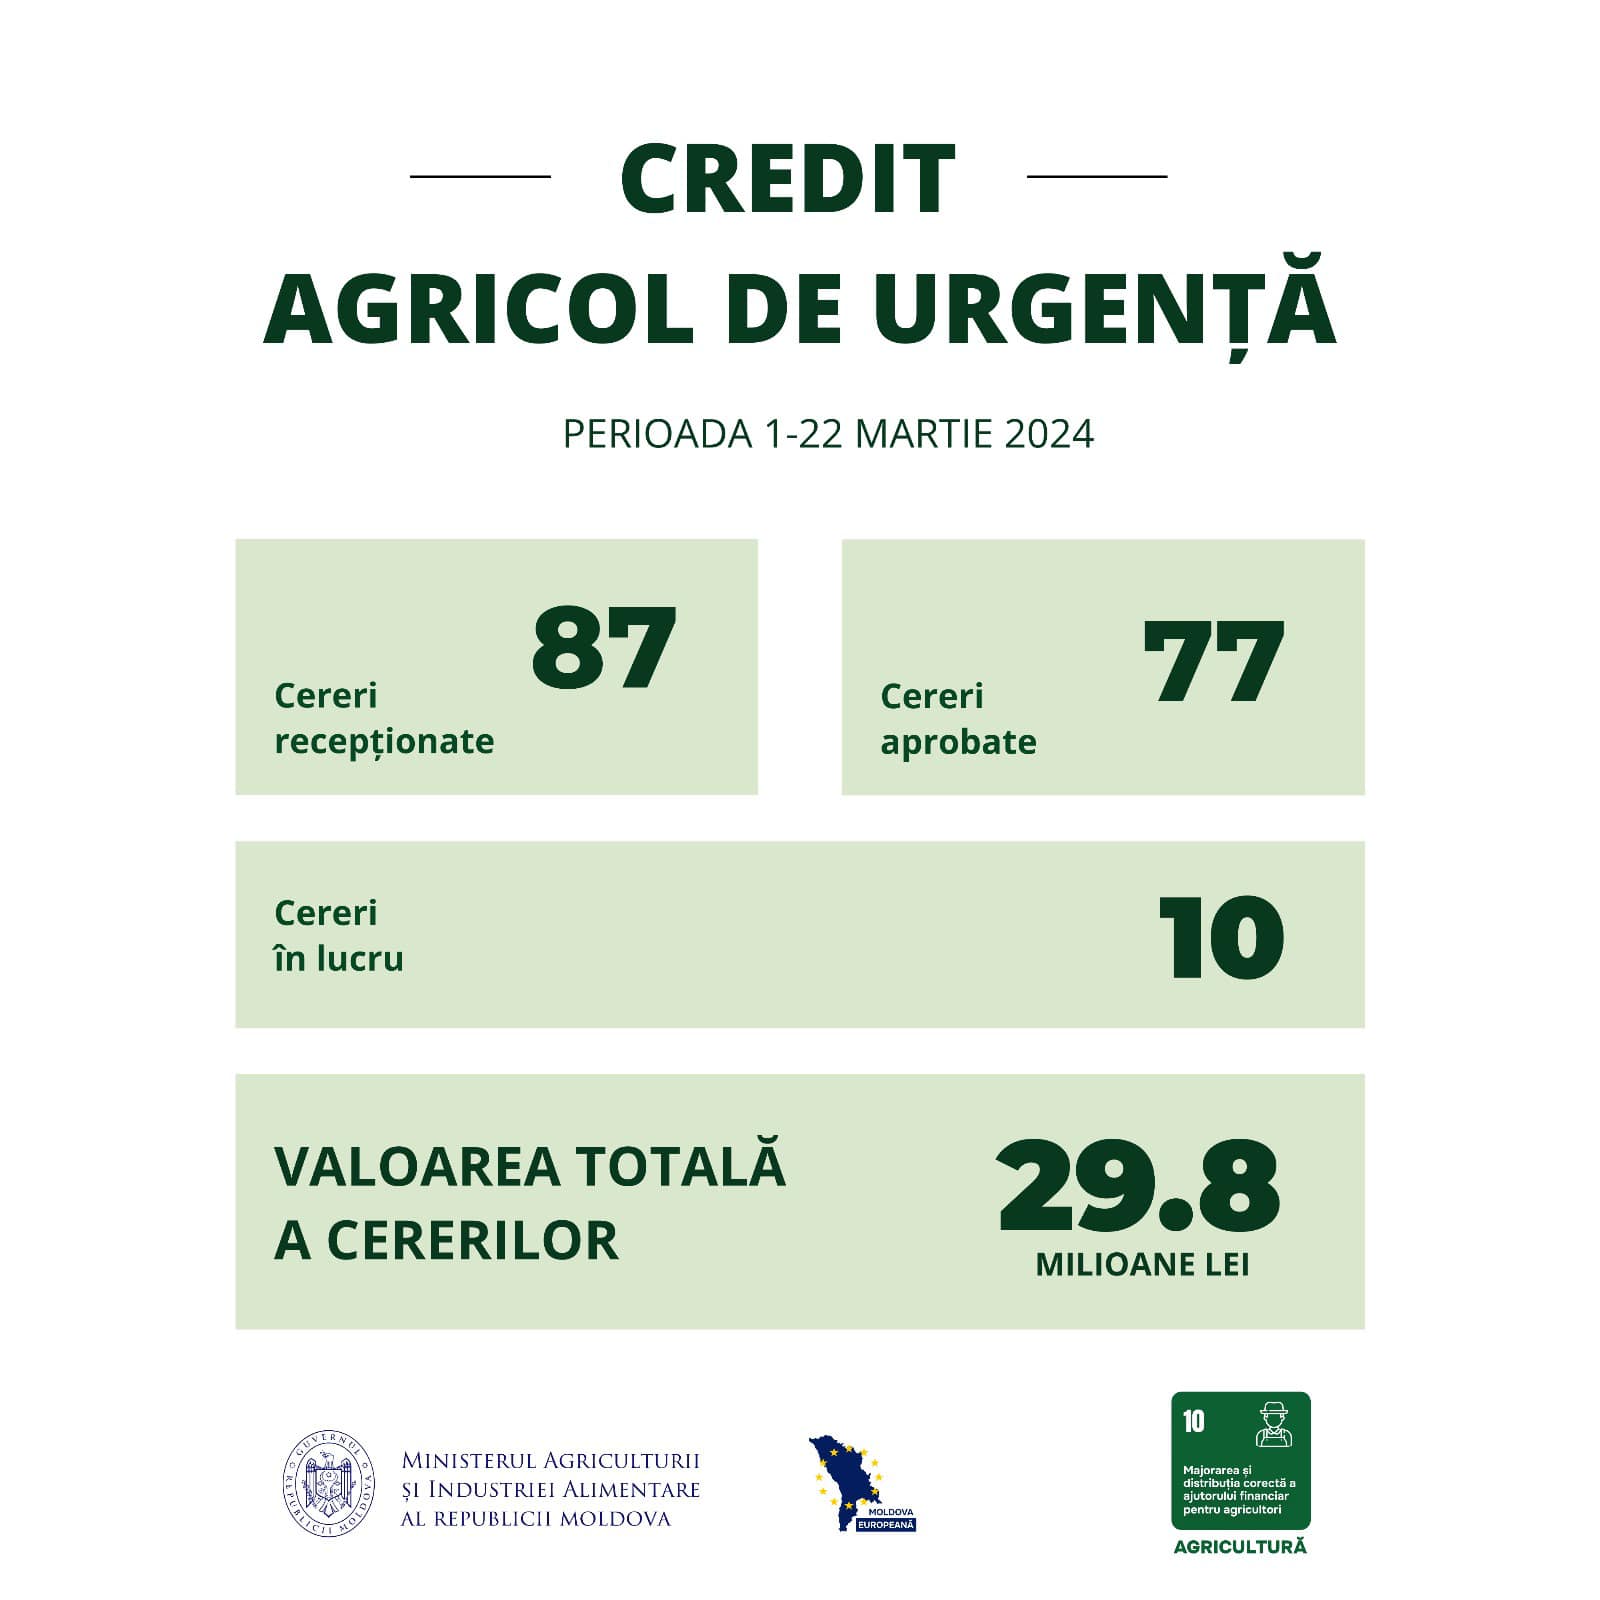 Creditul Agricol de Urgență: 77 de cereri aprobate în primele 3 săptămâni